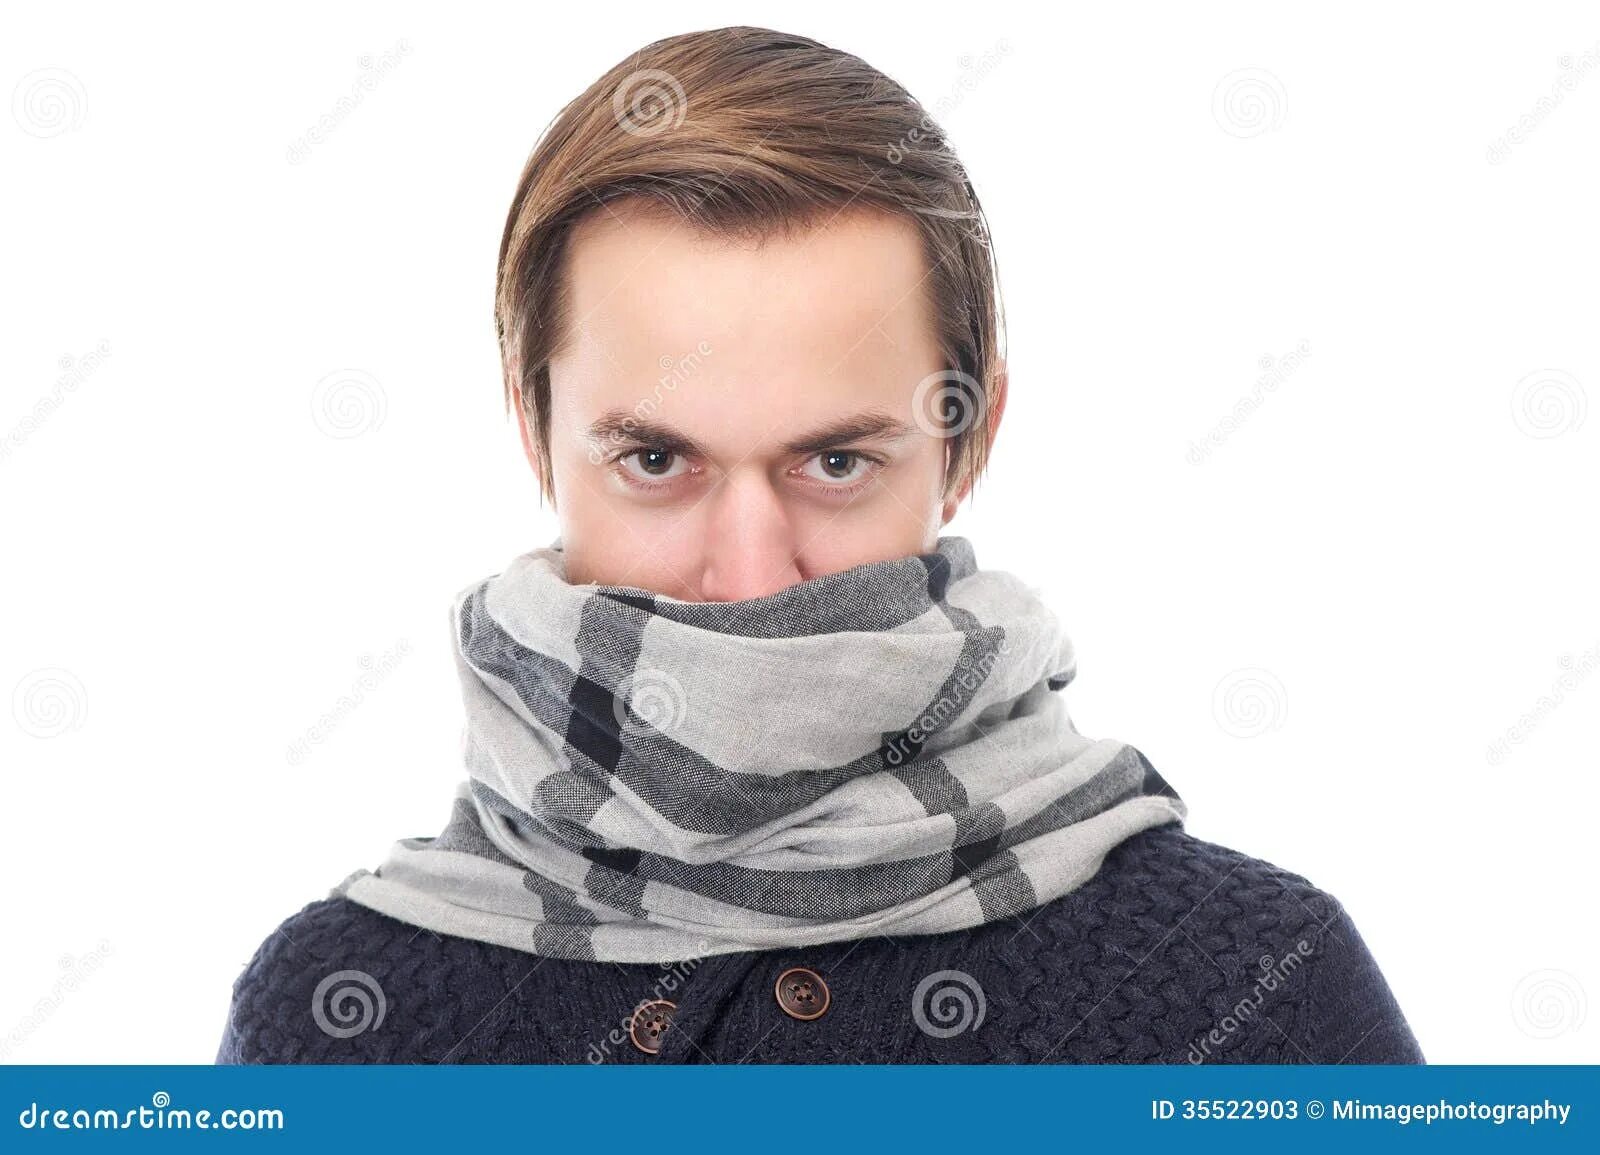 Закрыть лицо шарф. Шарф на человеке. Шарф прикрывающий лицо. Парень с шарфом на лице. Шарф закрывающий с носом.